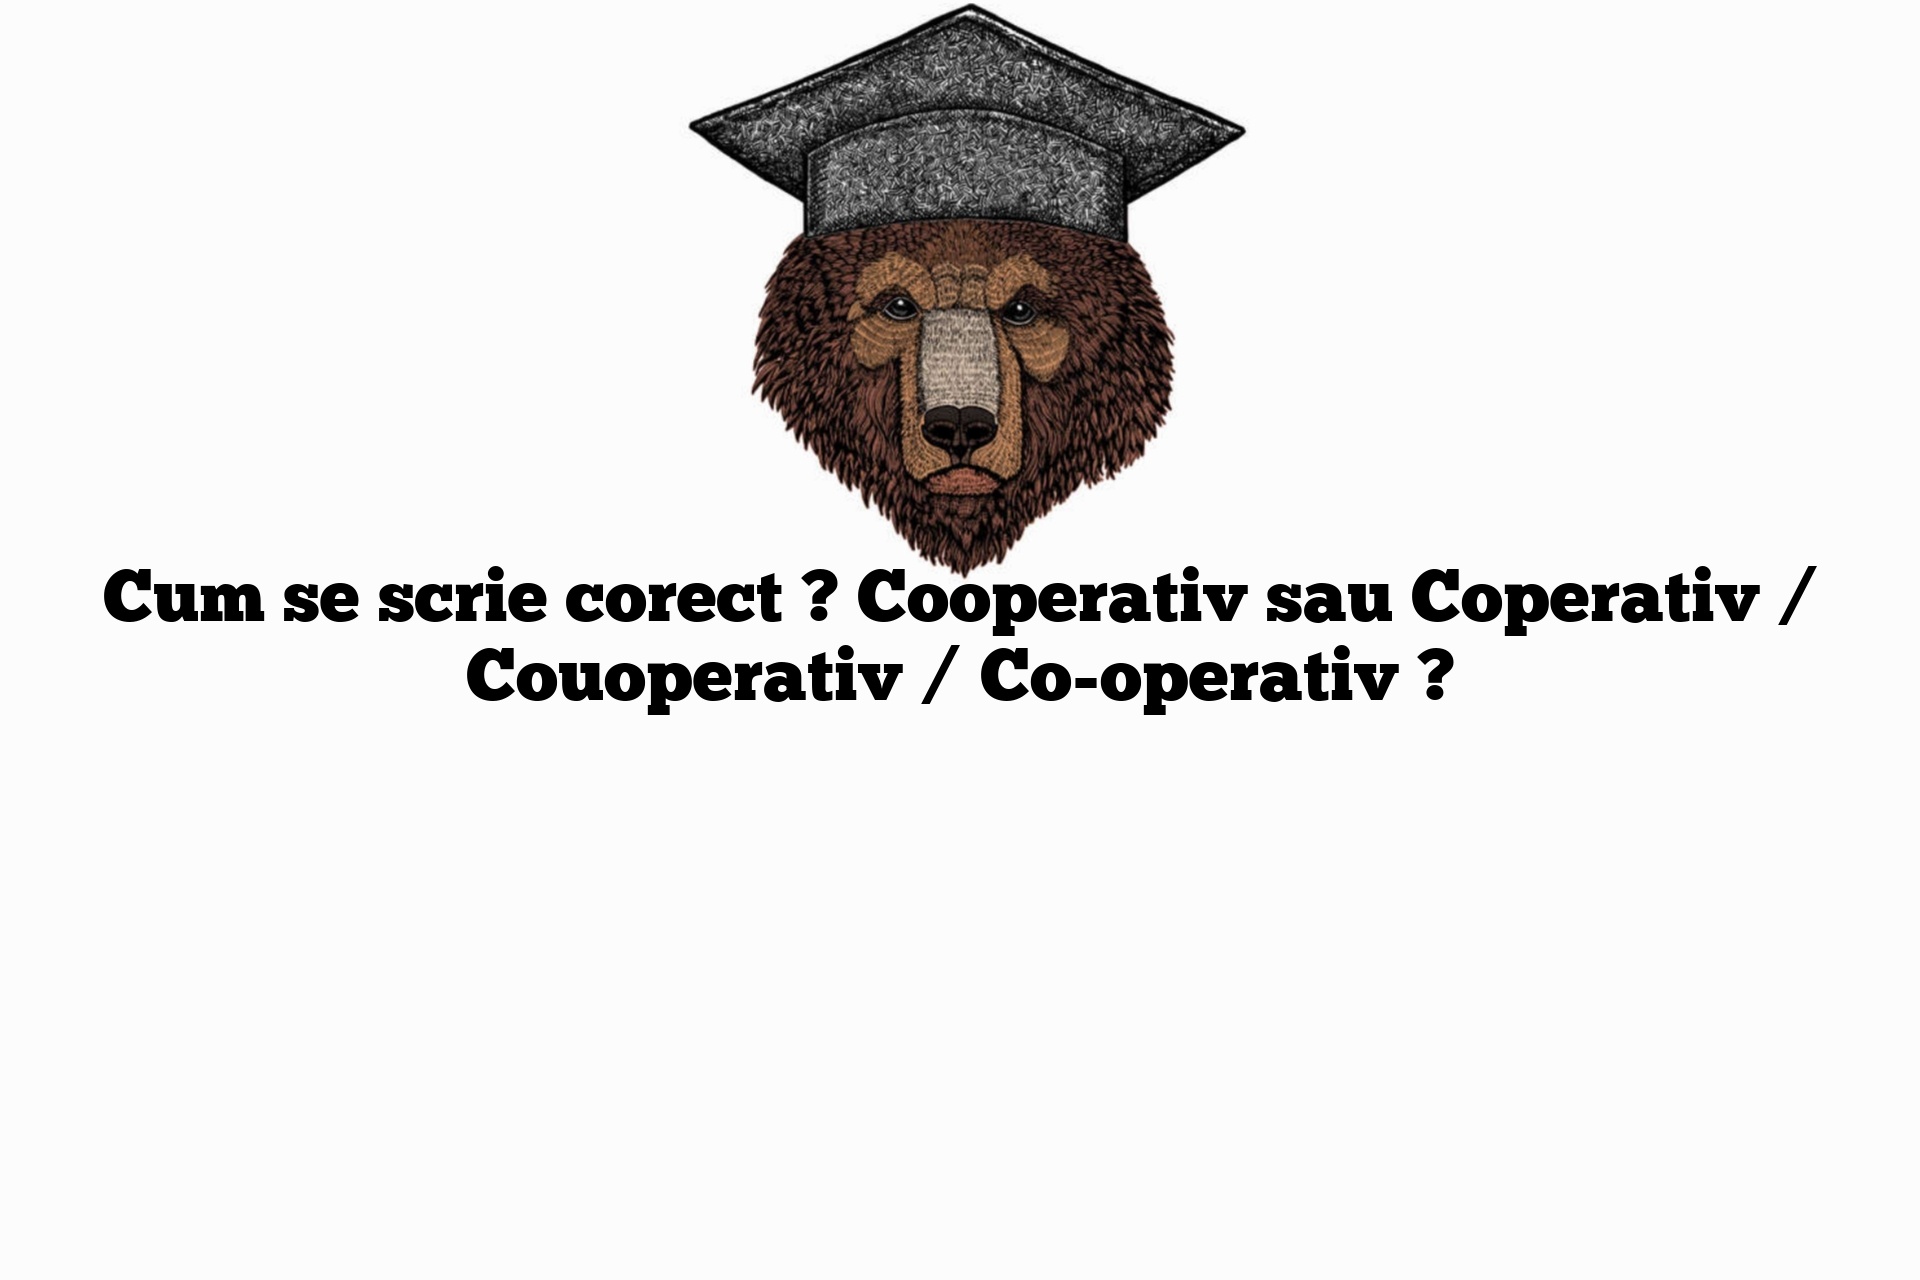 Cum se scrie corect ? Cooperativ sau Coperativ / Couoperativ / Co-operativ ?